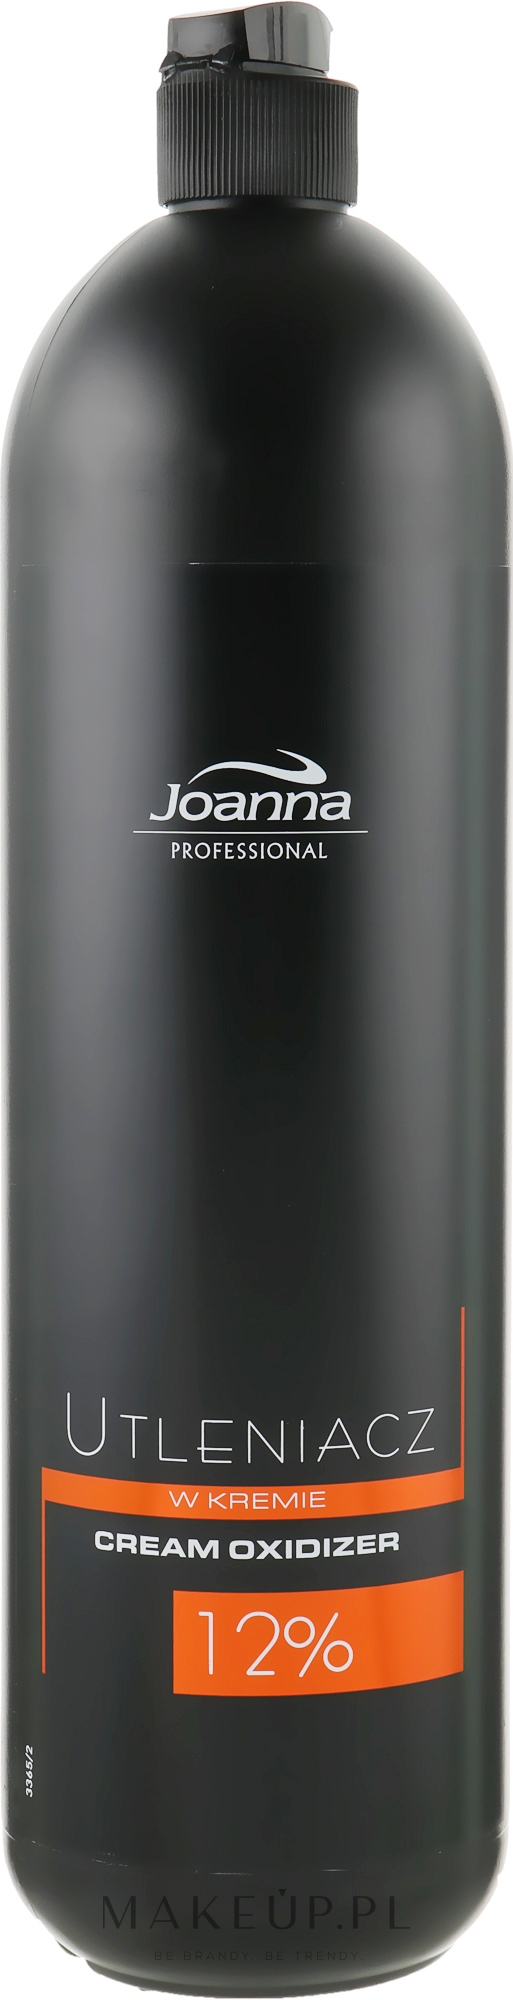 Utleniacz w kremie 12% - Joanna Professional — Zdjęcie 1000 g